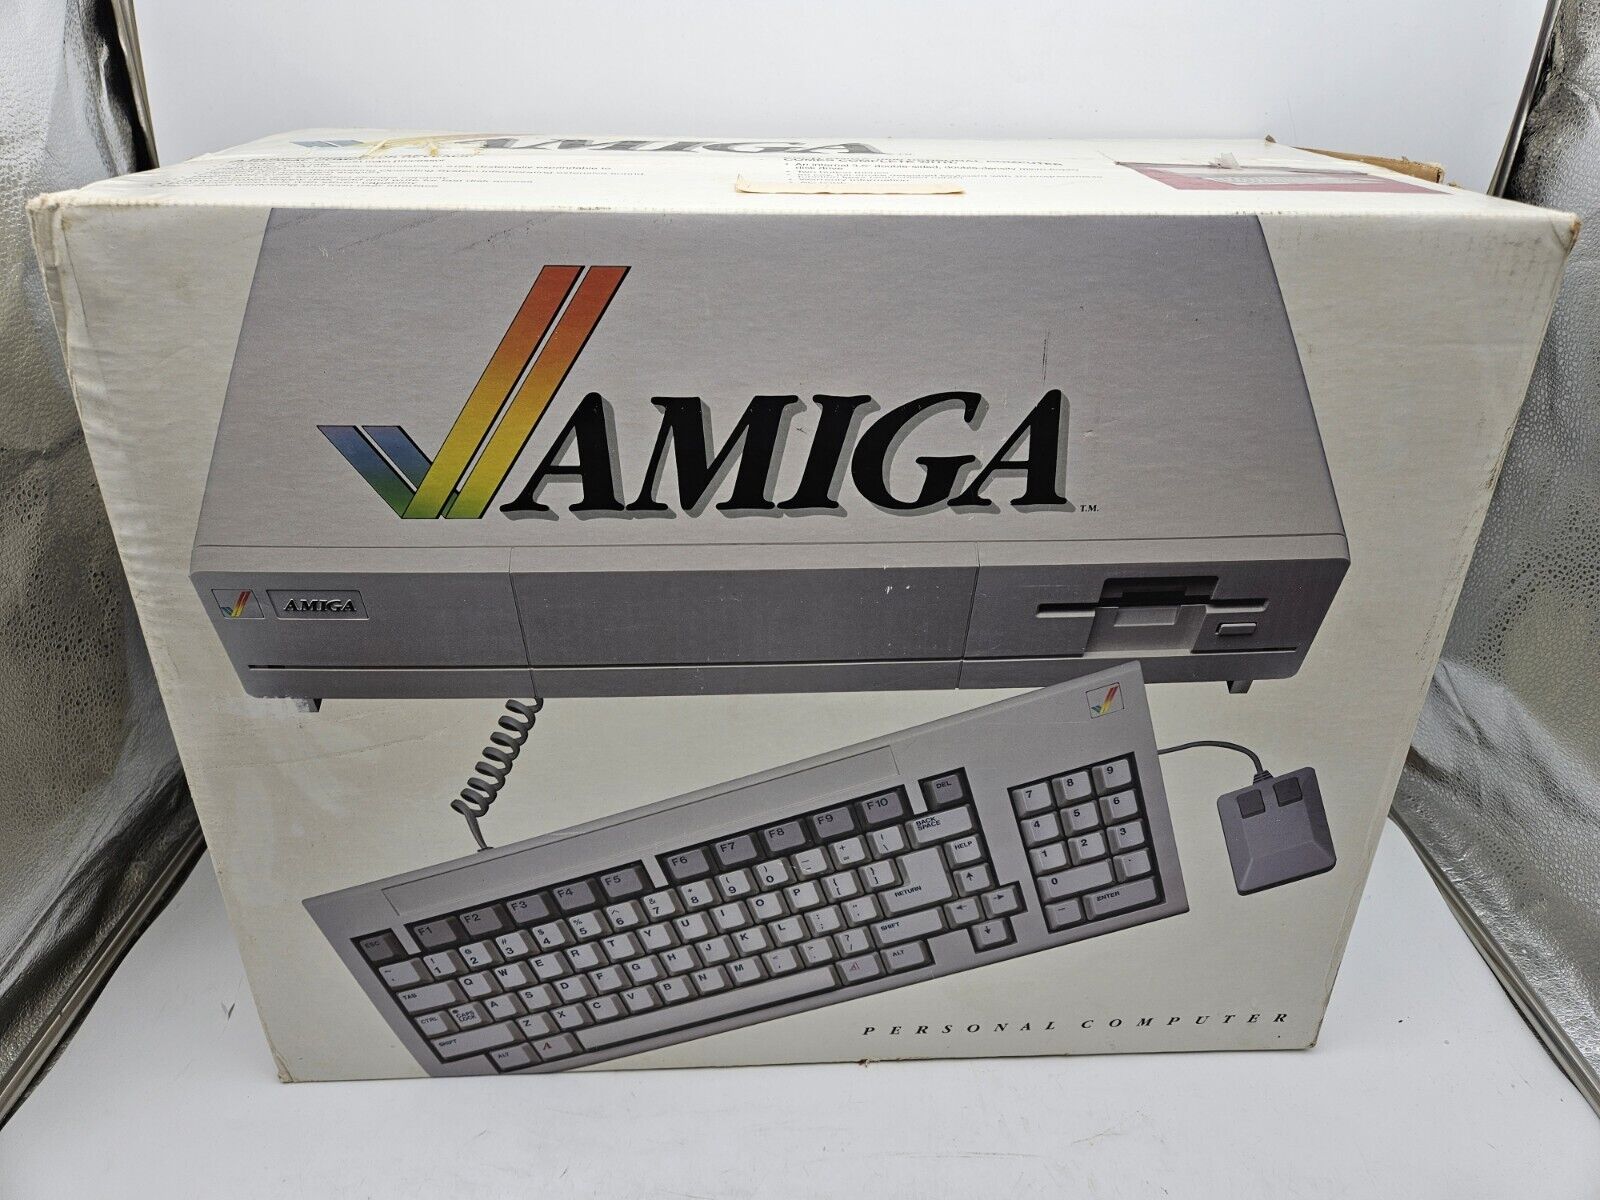 READ Rare - Commodore Amiga 1000 w/ Keyboard and Original Box